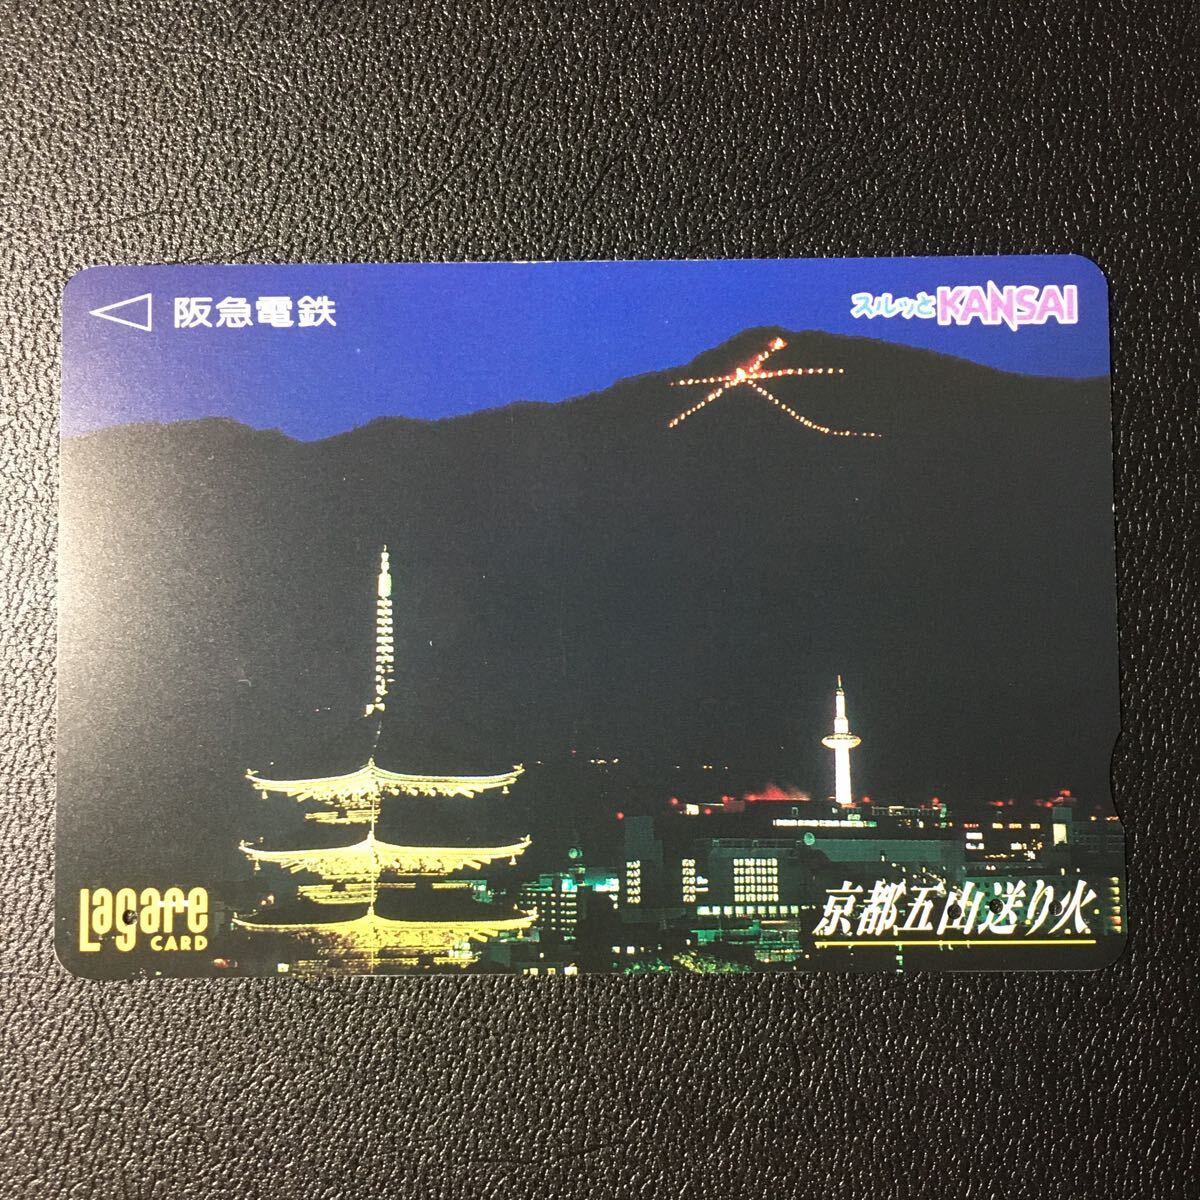 2000年8月1日発売柄ー「京都五山送り火」ー阪急ラガールカード(使用済スルッとKANSAI)_画像1